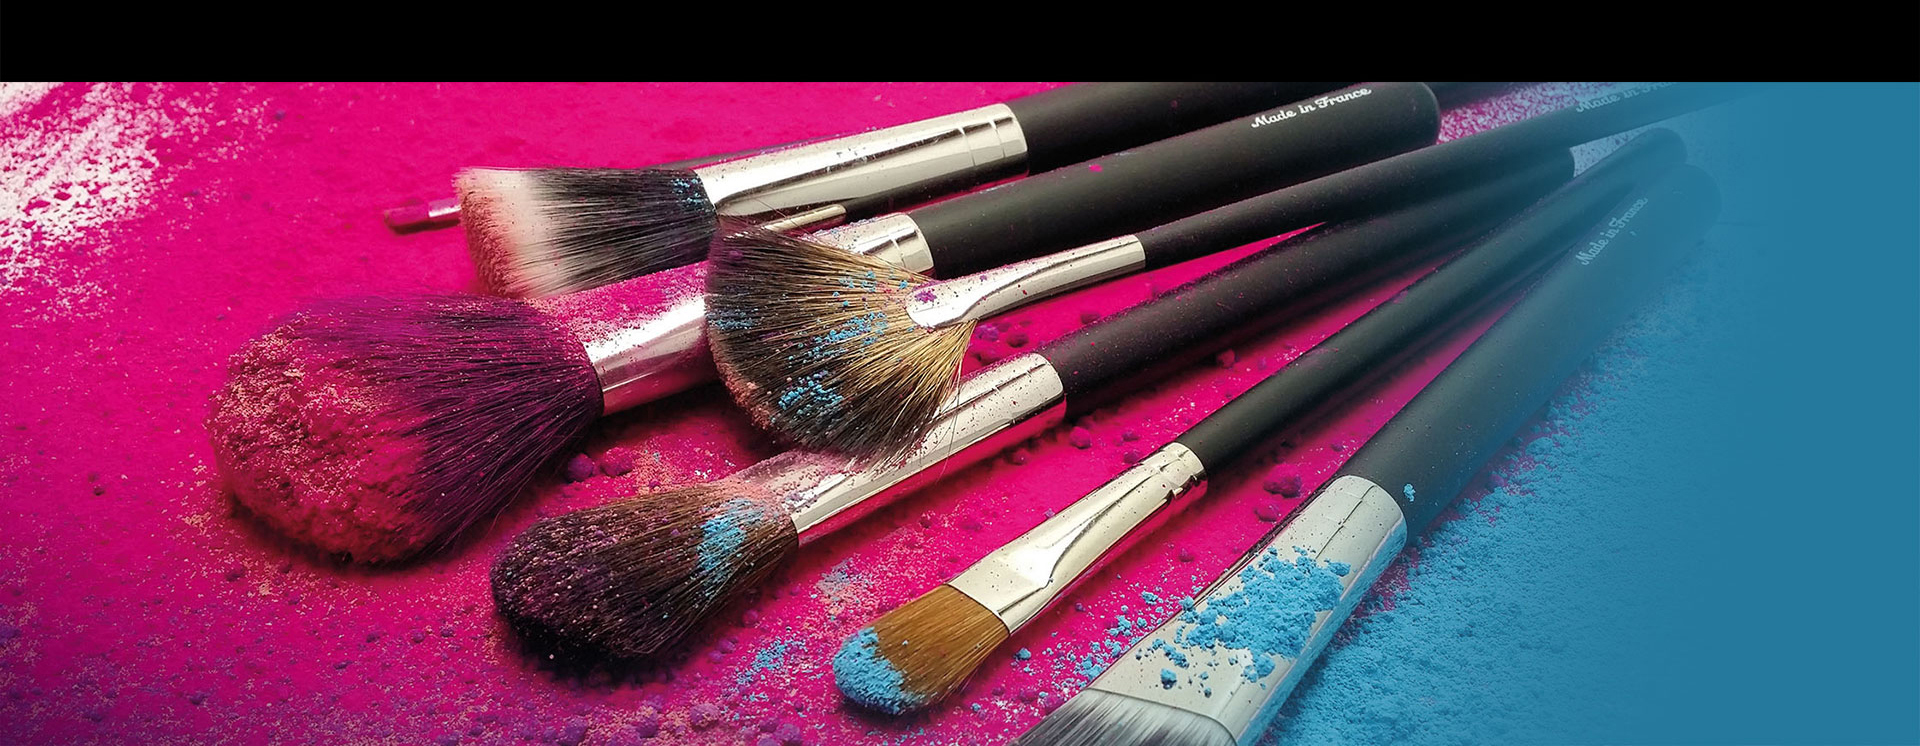 Raphael make-up brushes